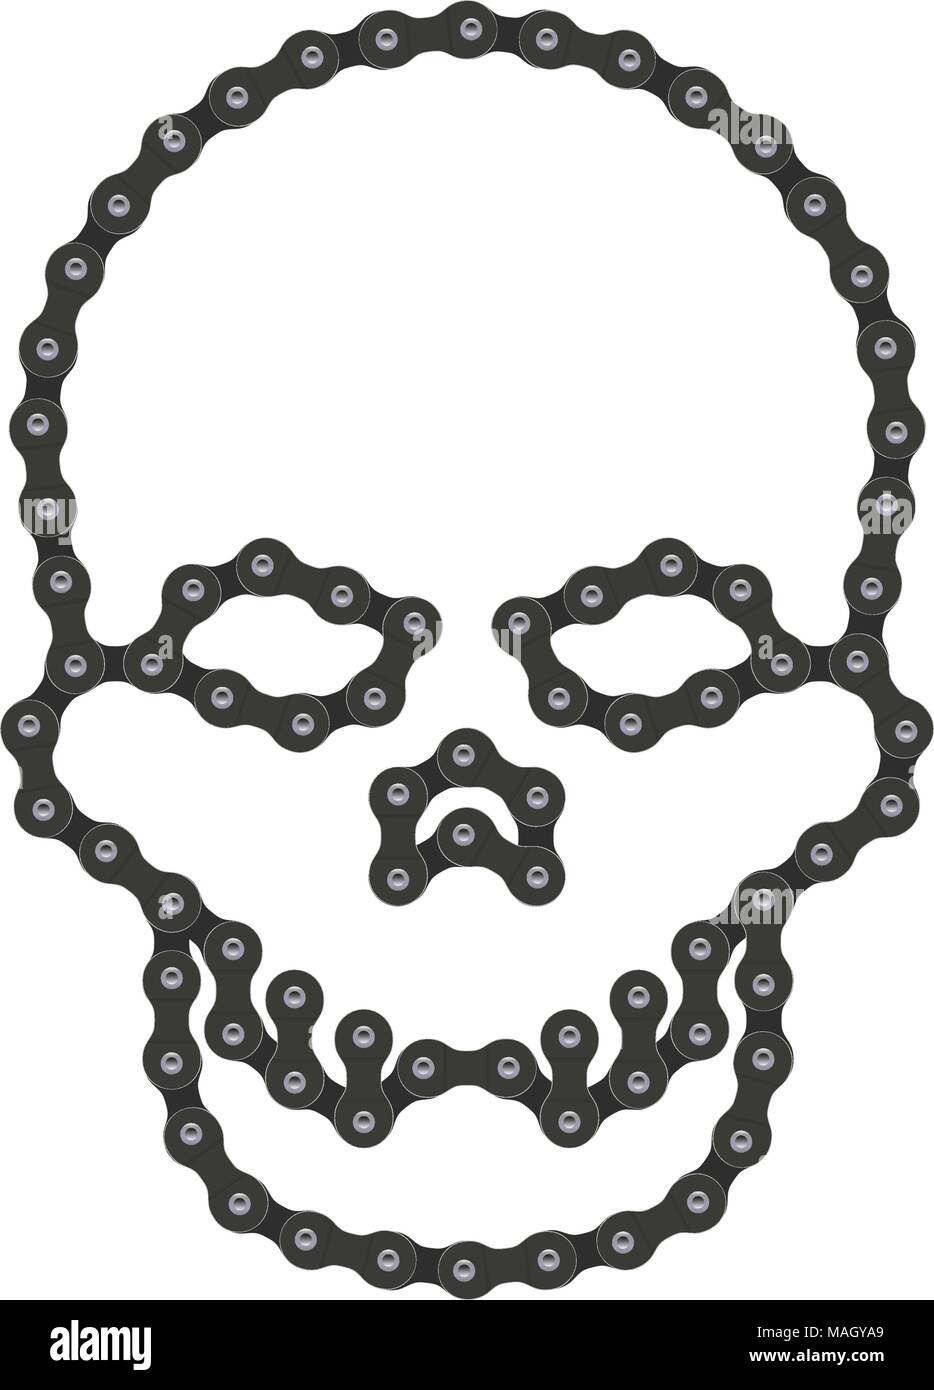 Vektor menschlichen Schädel aus Bike oder Fahrrad Kette. Vektor Schädel oder Death Head Symbol. Hi-Detailed Fahrradkette Schädel Stock Vektor